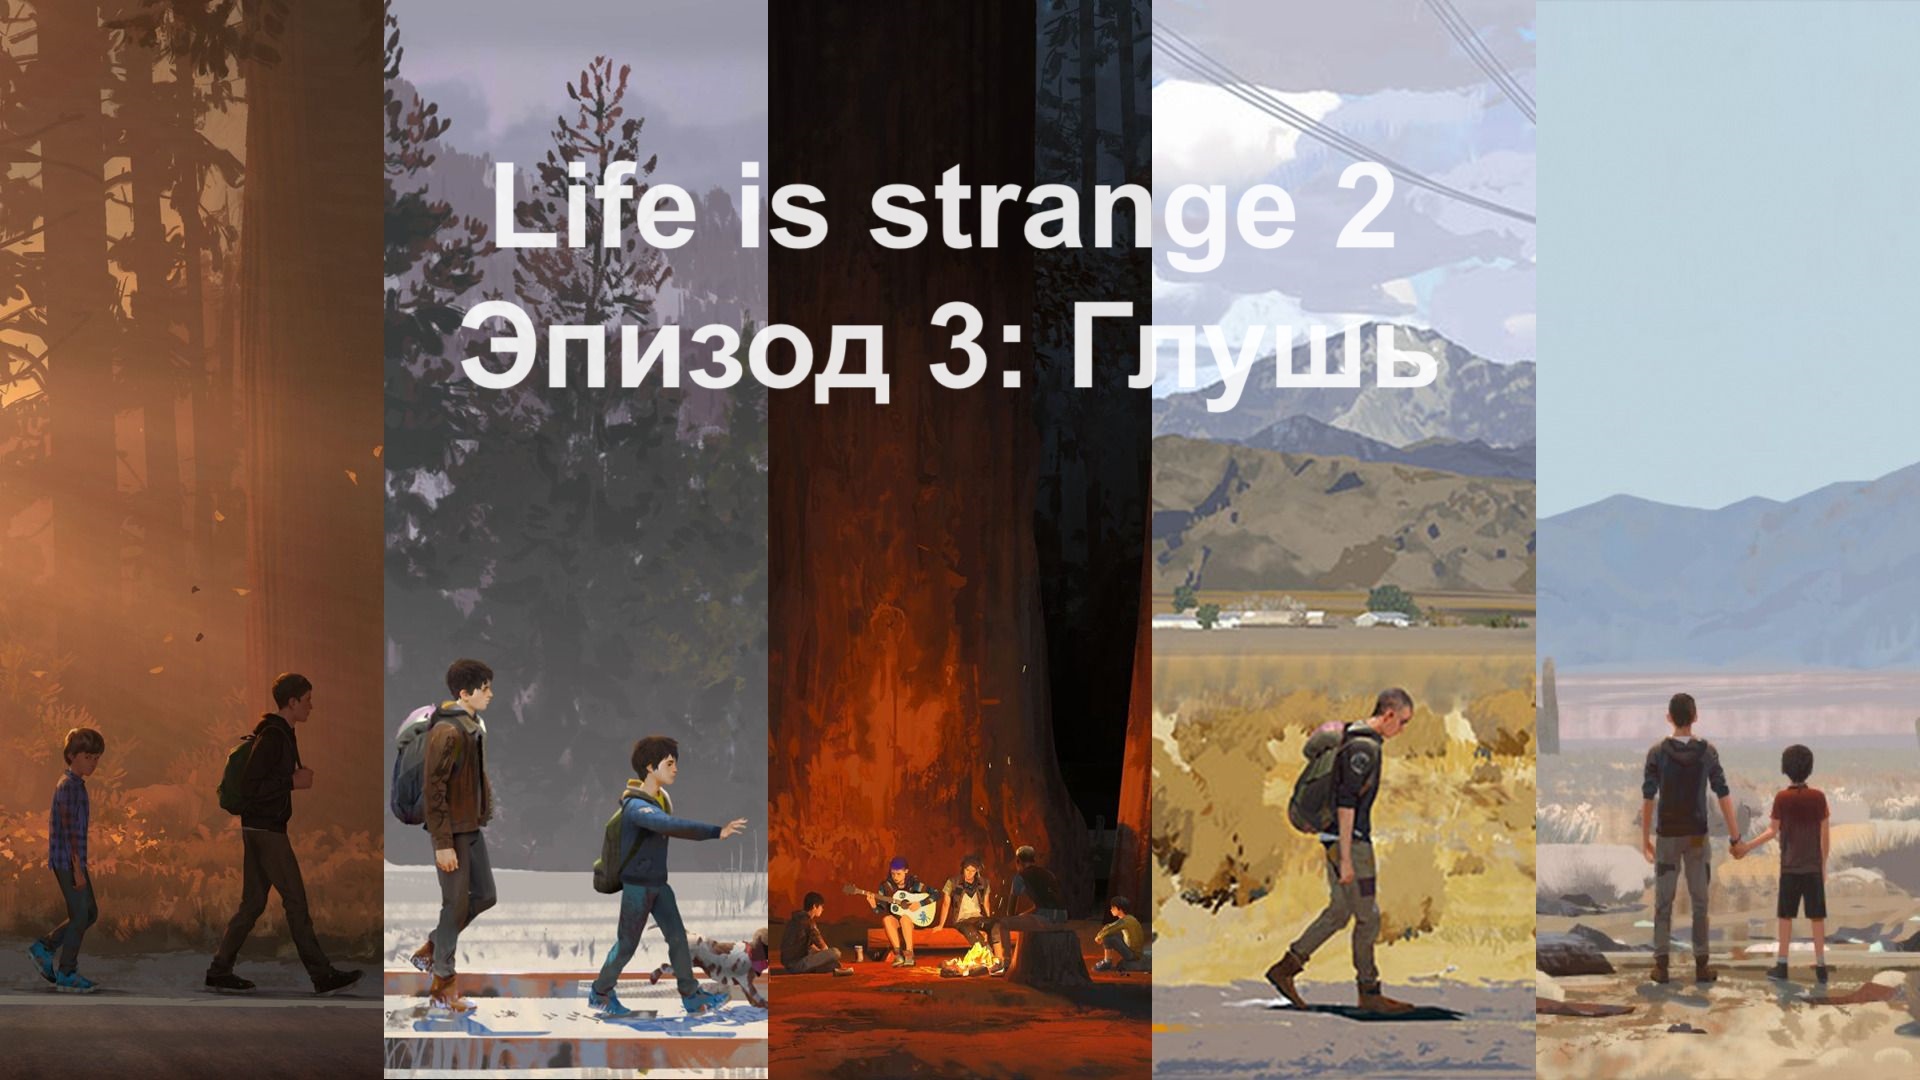 [Прохождение] Life is Strange 2 - Эпизод 3: Глушь (без комментариев)